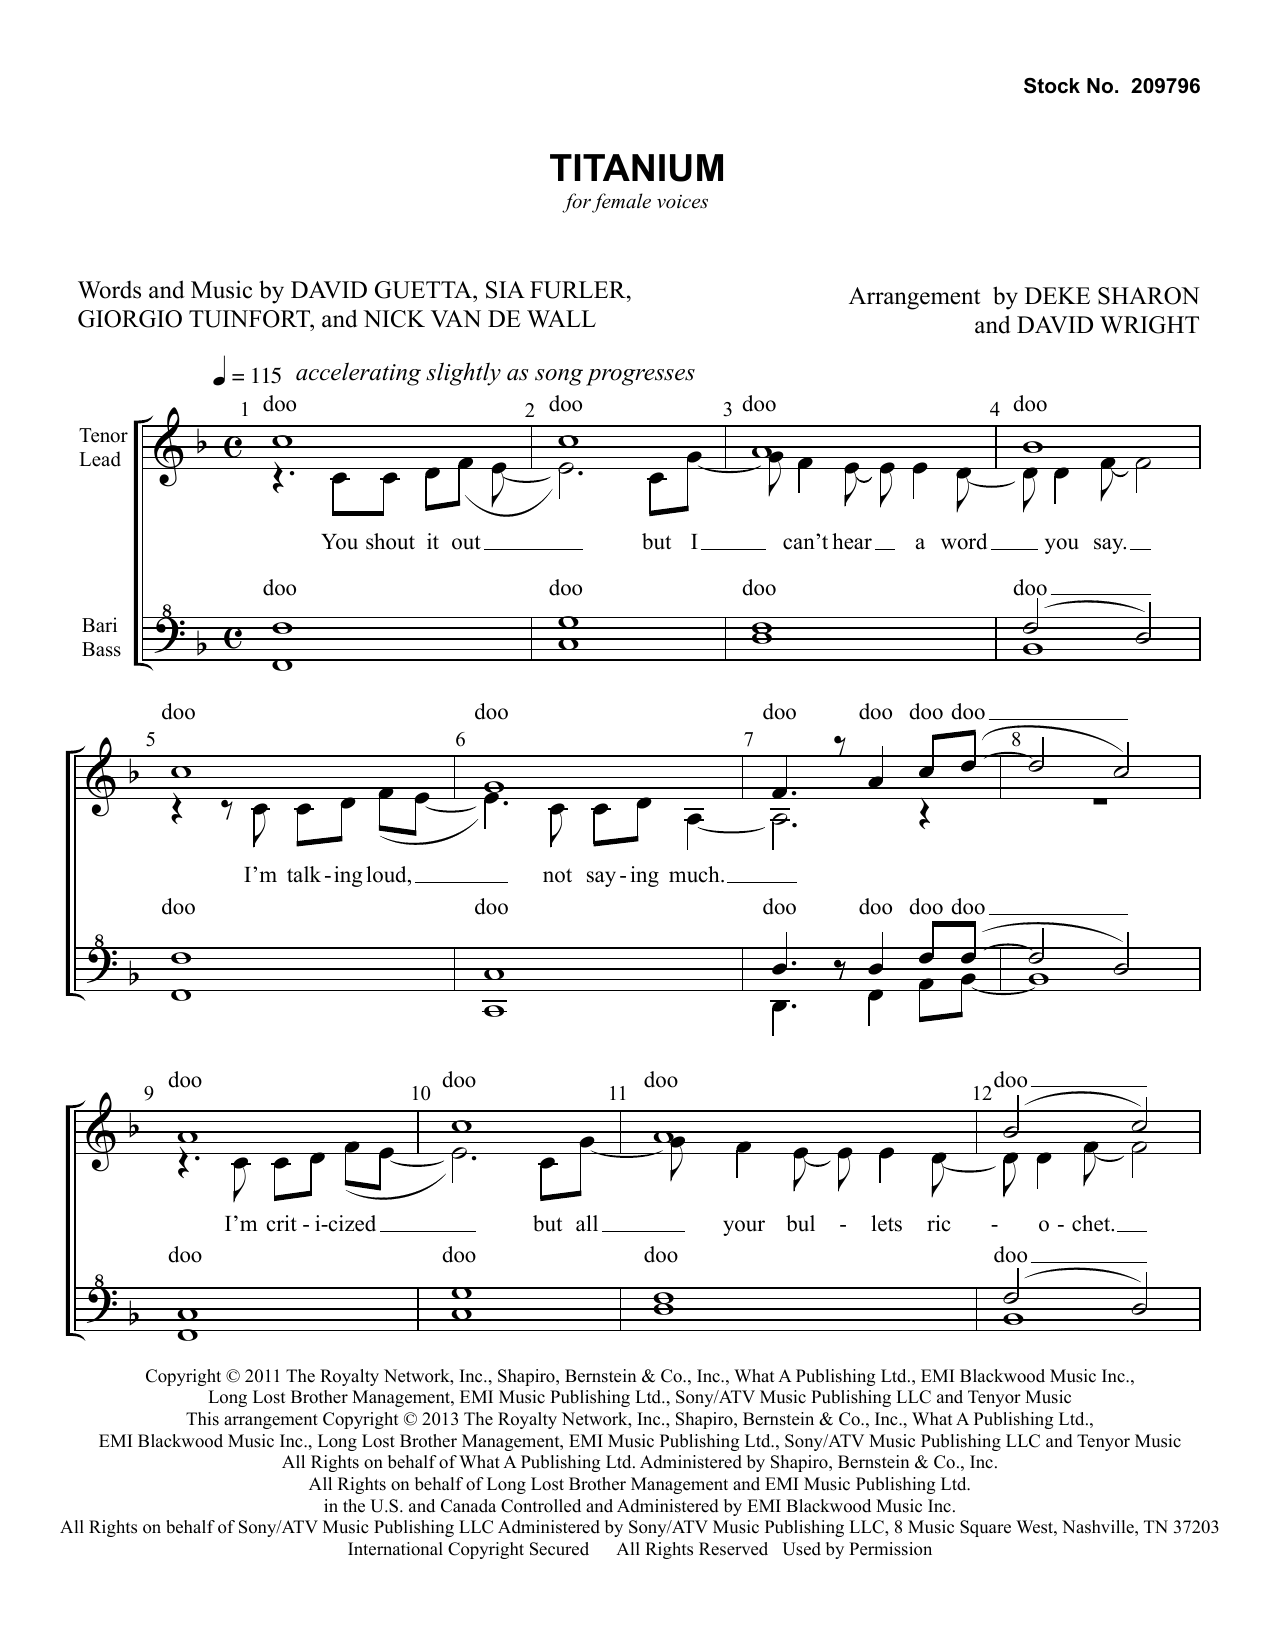 David Guetta Titanium (feat. Sia) (arr. Deke Sharon, David Wright) Sheet Music Notes & Chords for SSA Choir - Download or Print PDF